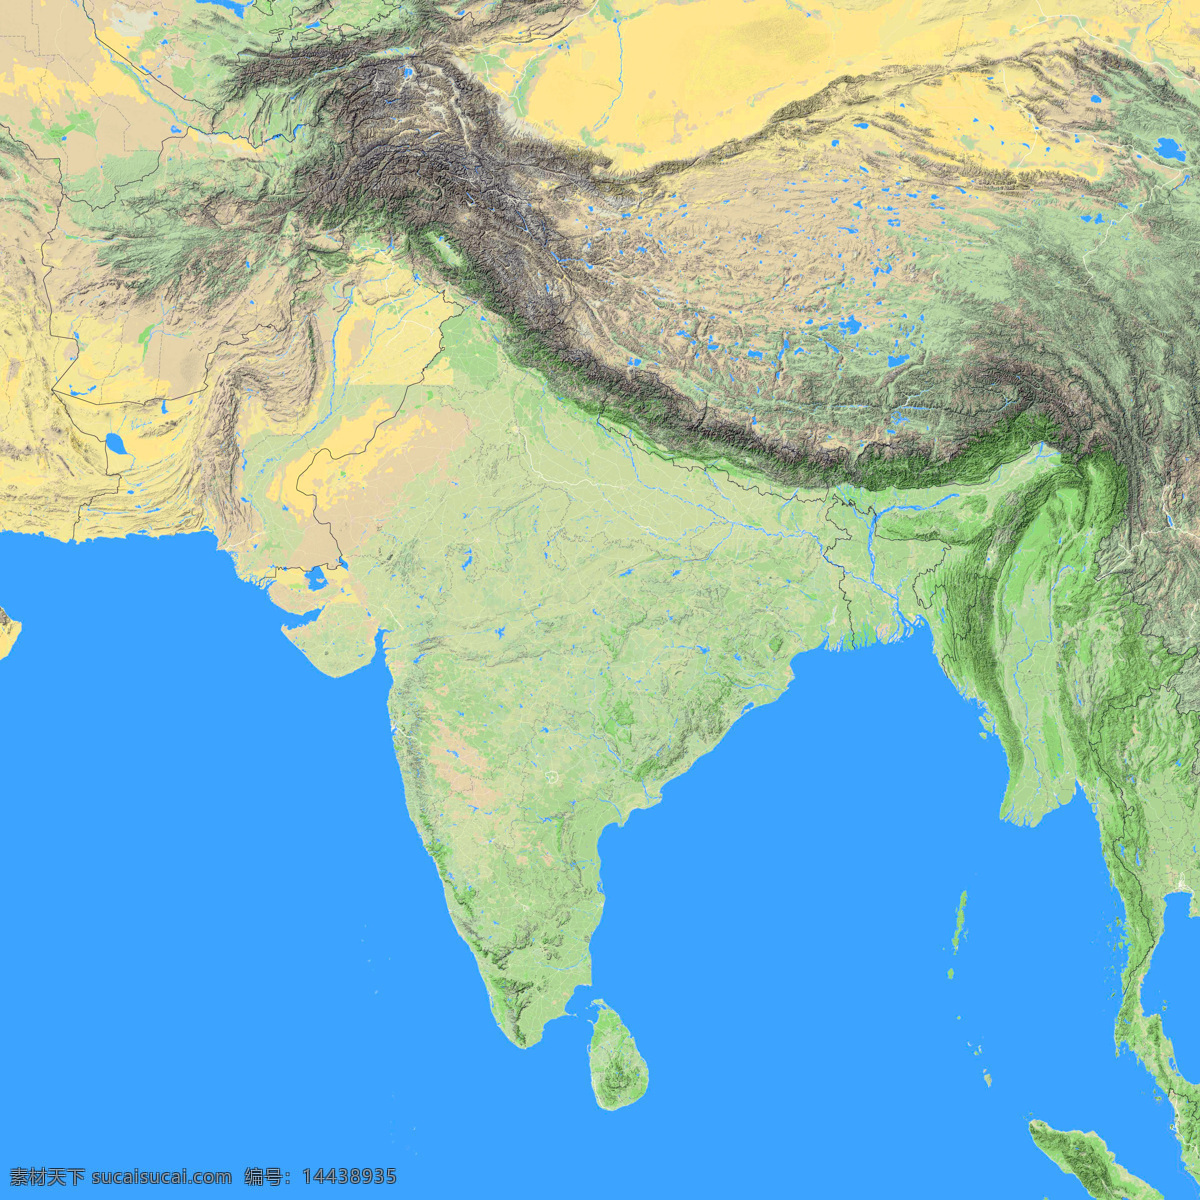 印度地形图 印度 南亚 喜马拉雅 地形图 亚洲 欧洲 非洲 美洲 澳洲 南极洲 上帝之眼 卫星图 俯视图 nasa 地中海 海洋 山地 西西里岛 撒丁岛 阿尔卑斯山 南欧 东欧 地球 自然景观 自然风景